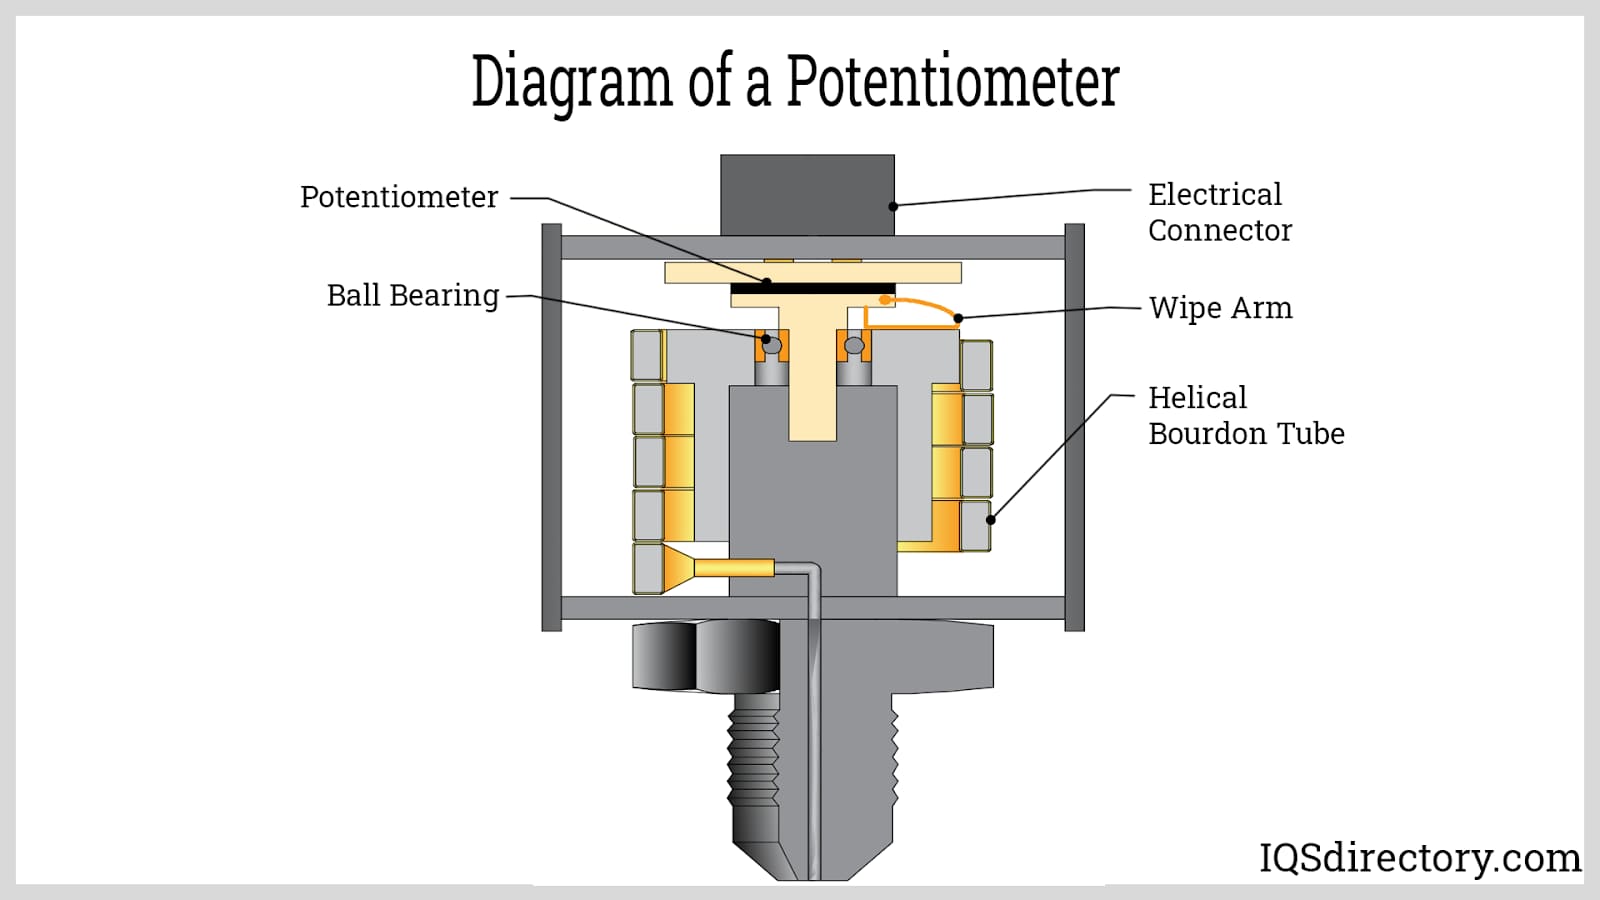 Diagram of a Potentiometer